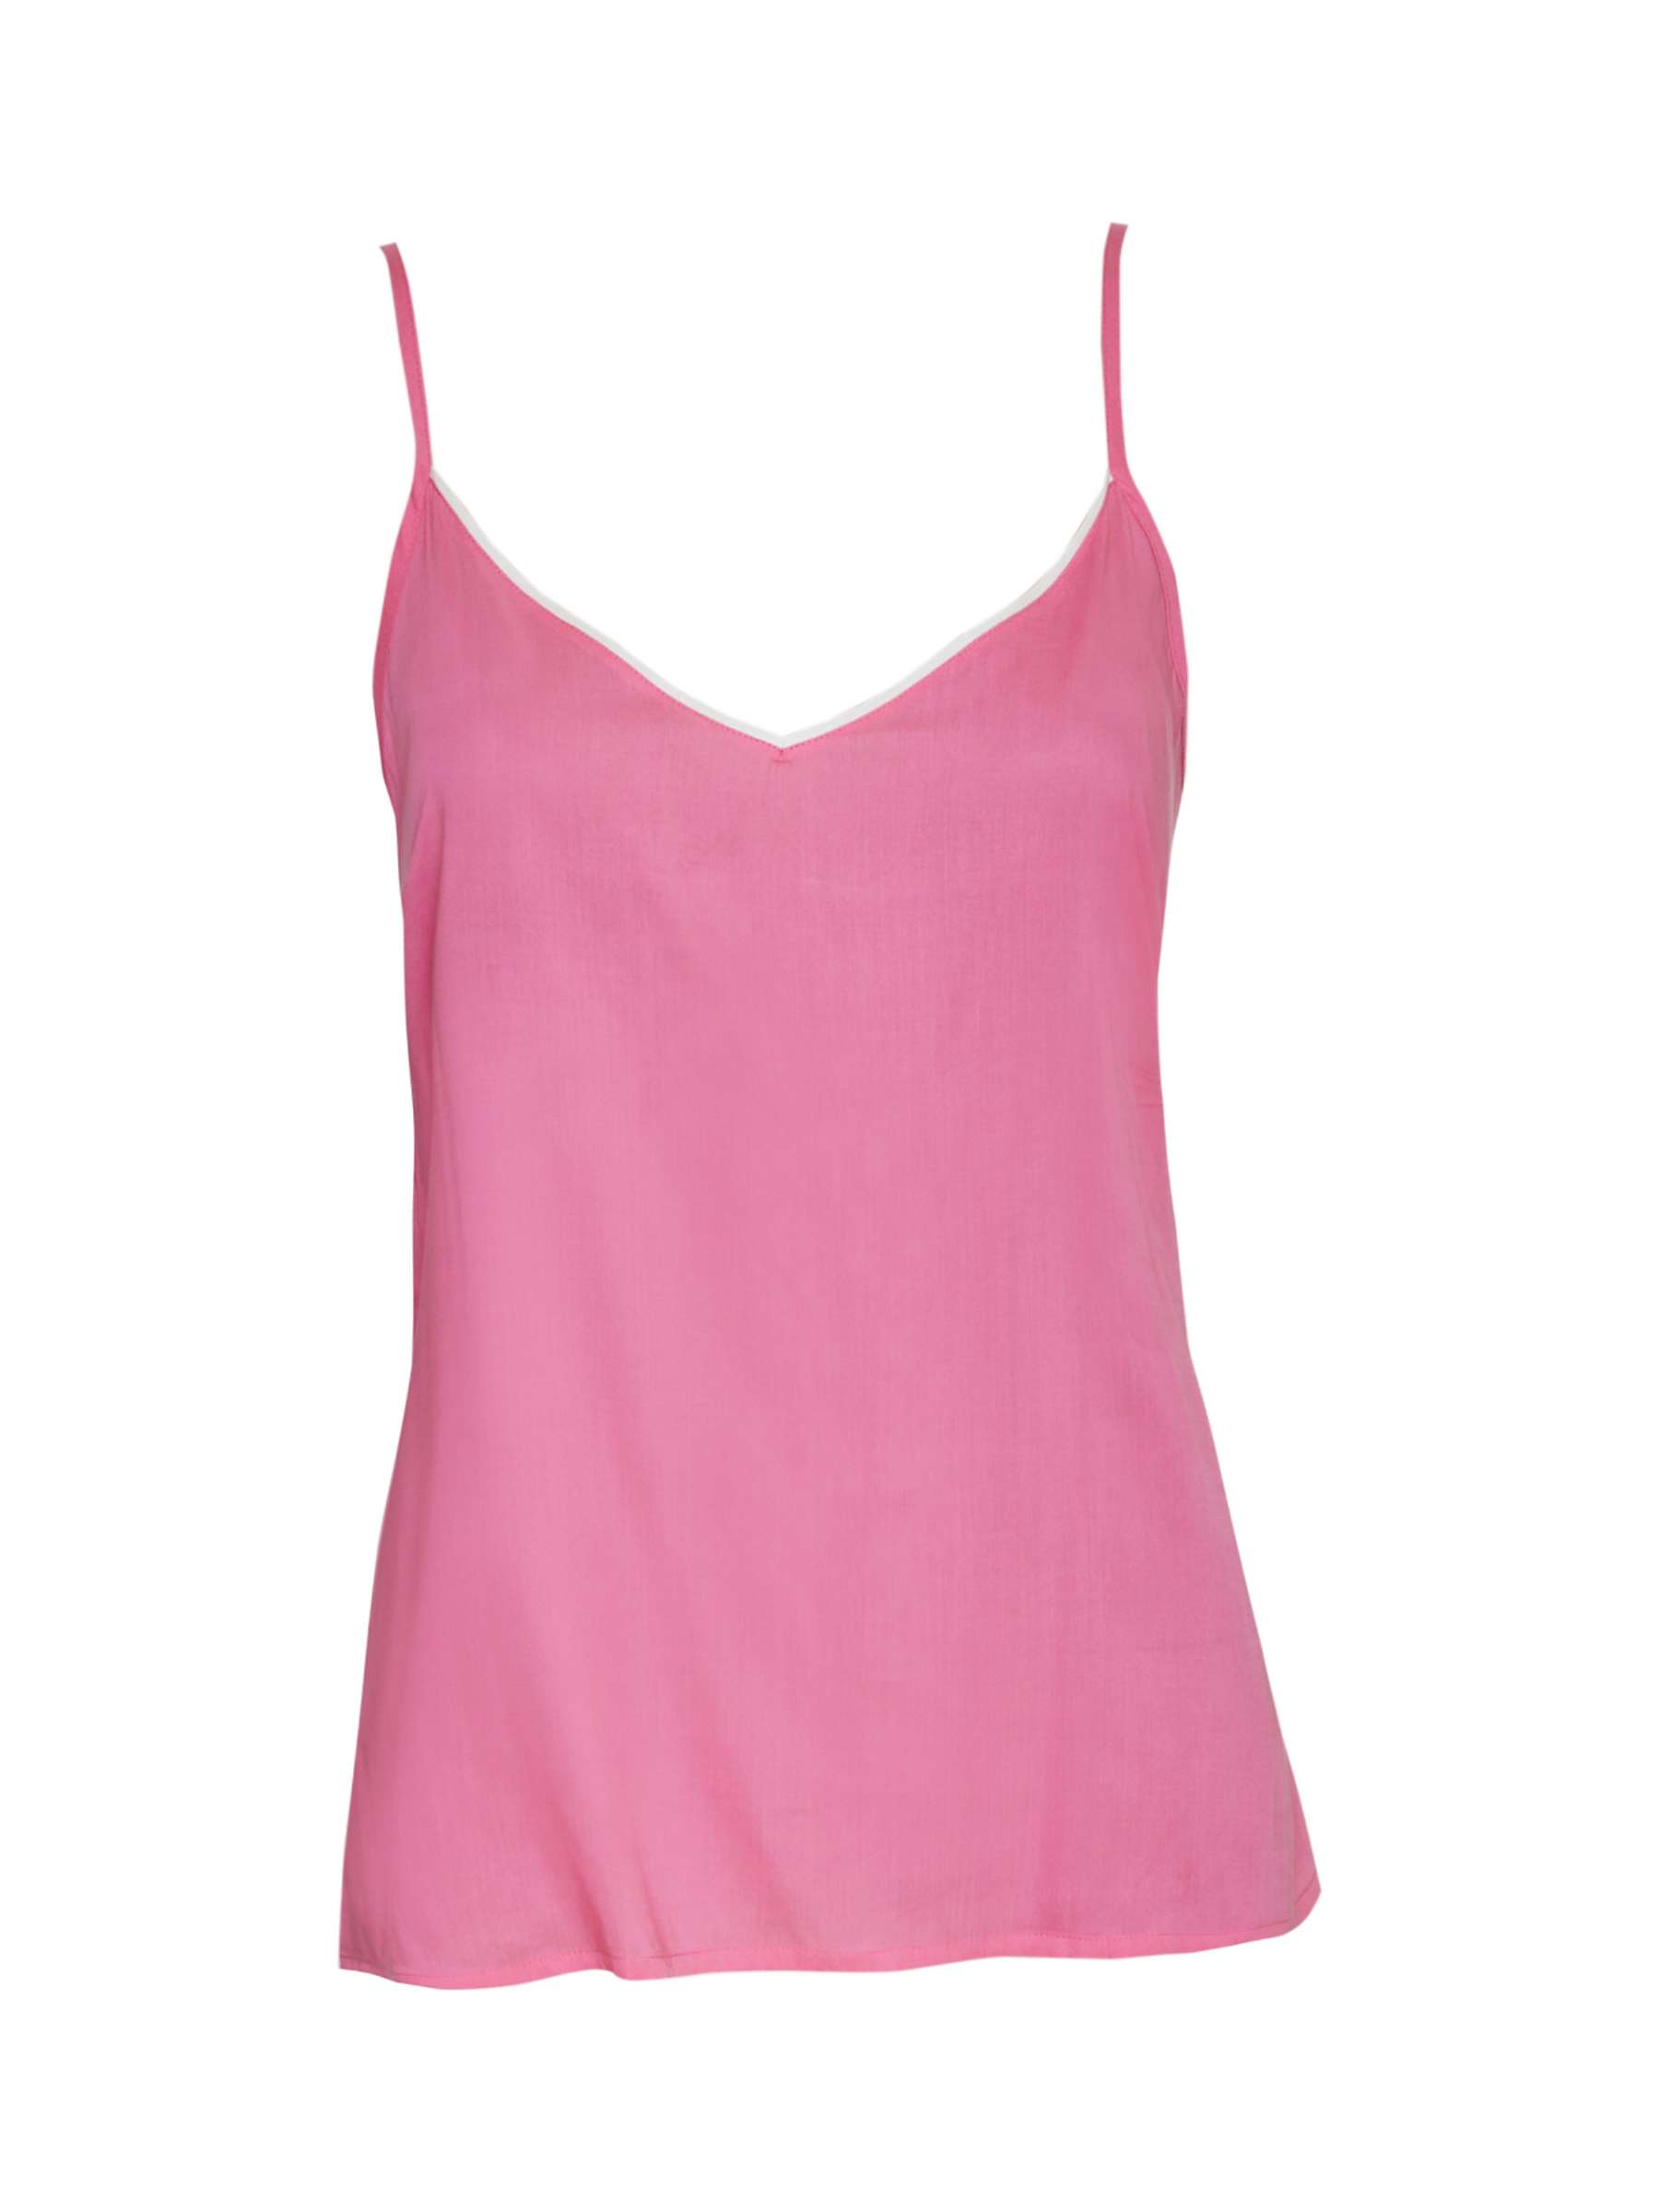 Buy Cyberjammies Shelly Cami Pyjama Top, Pink Online at johnlewis.com